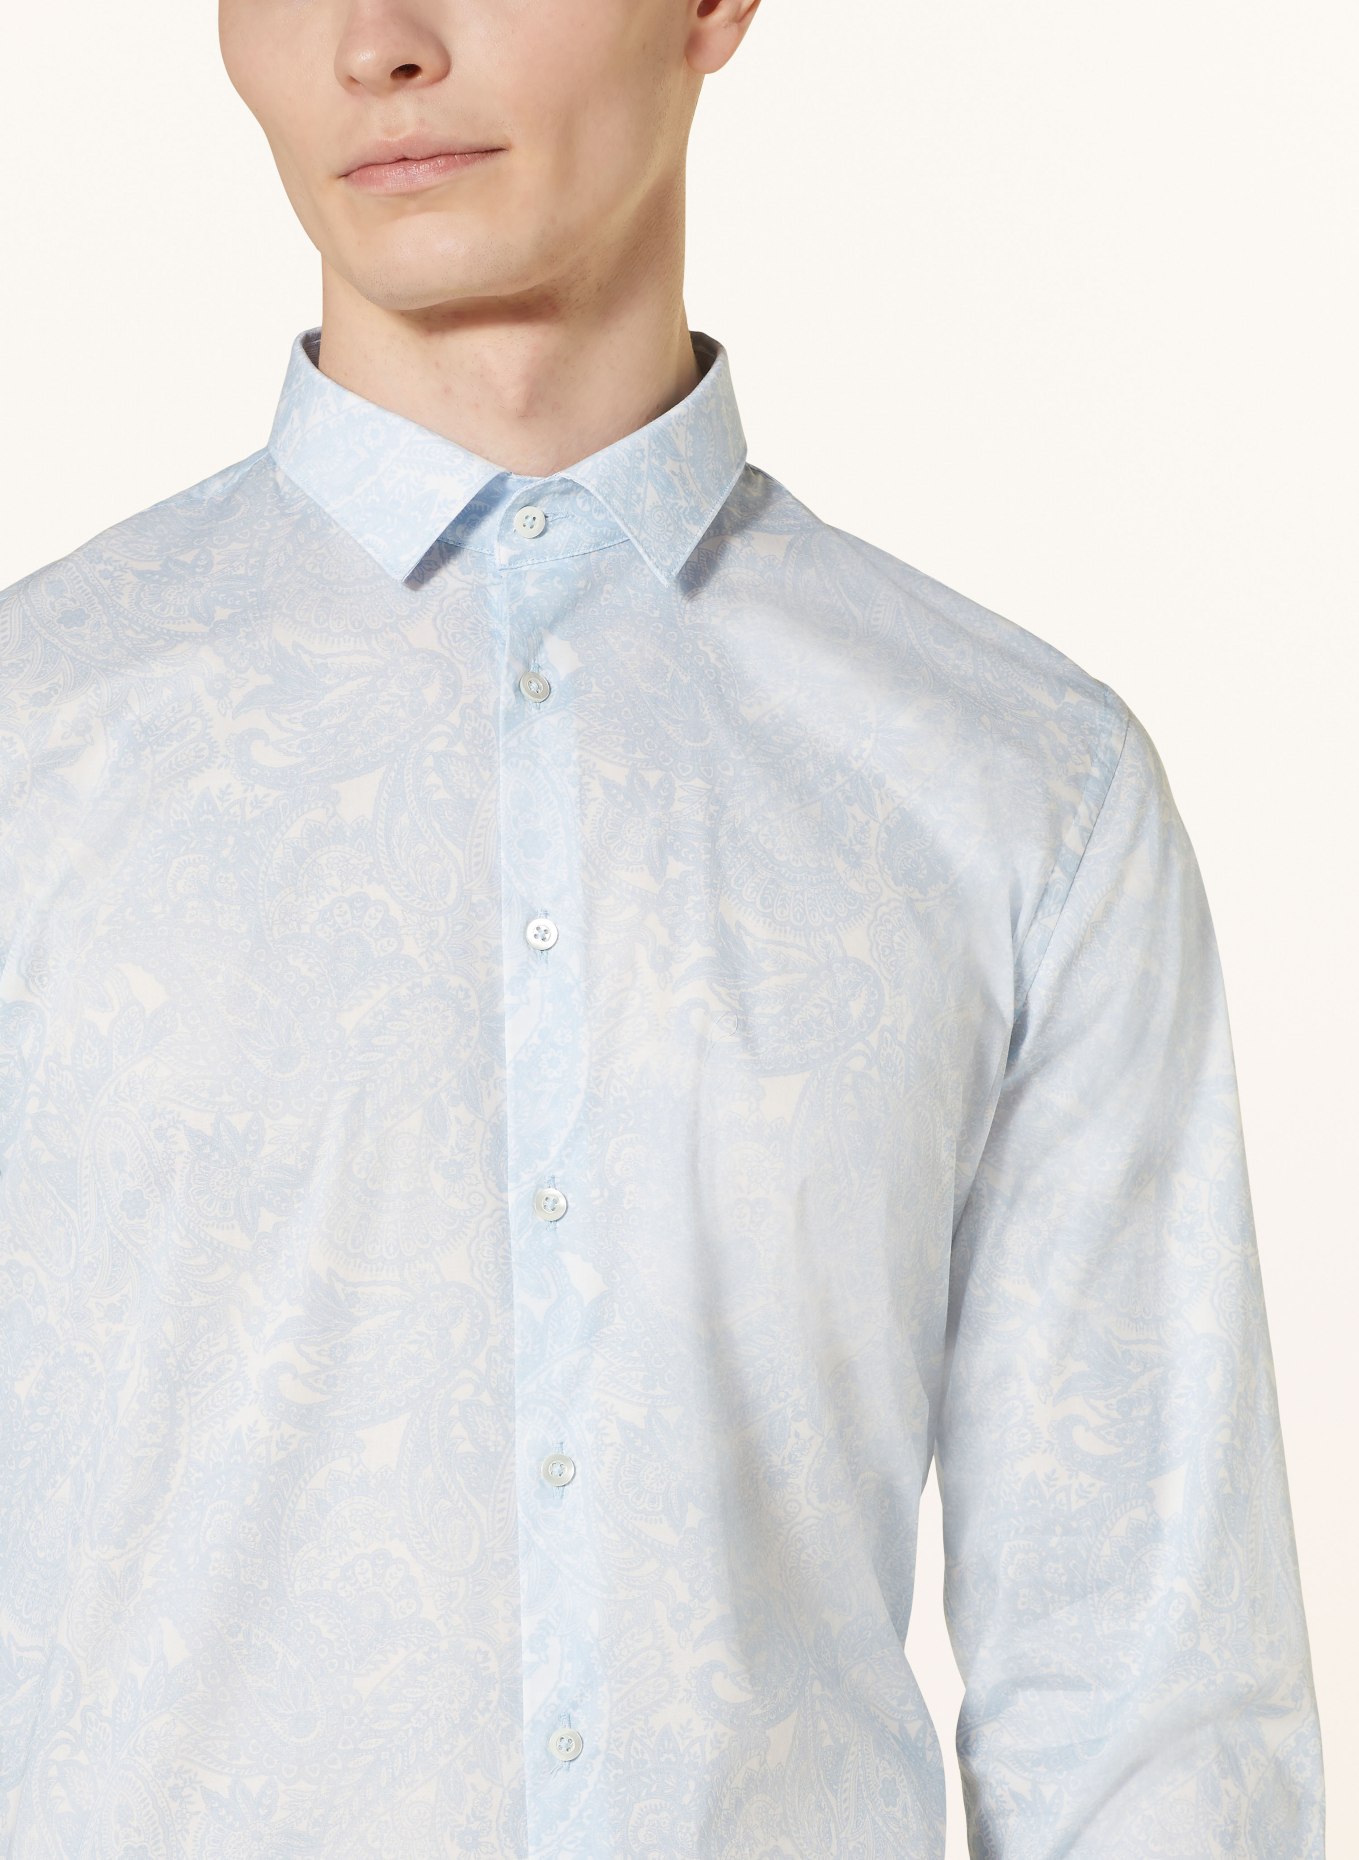 Q1 Manufaktur Shirt premium fit, Color: LIGHT BLUE/ WHITE (Image 4)